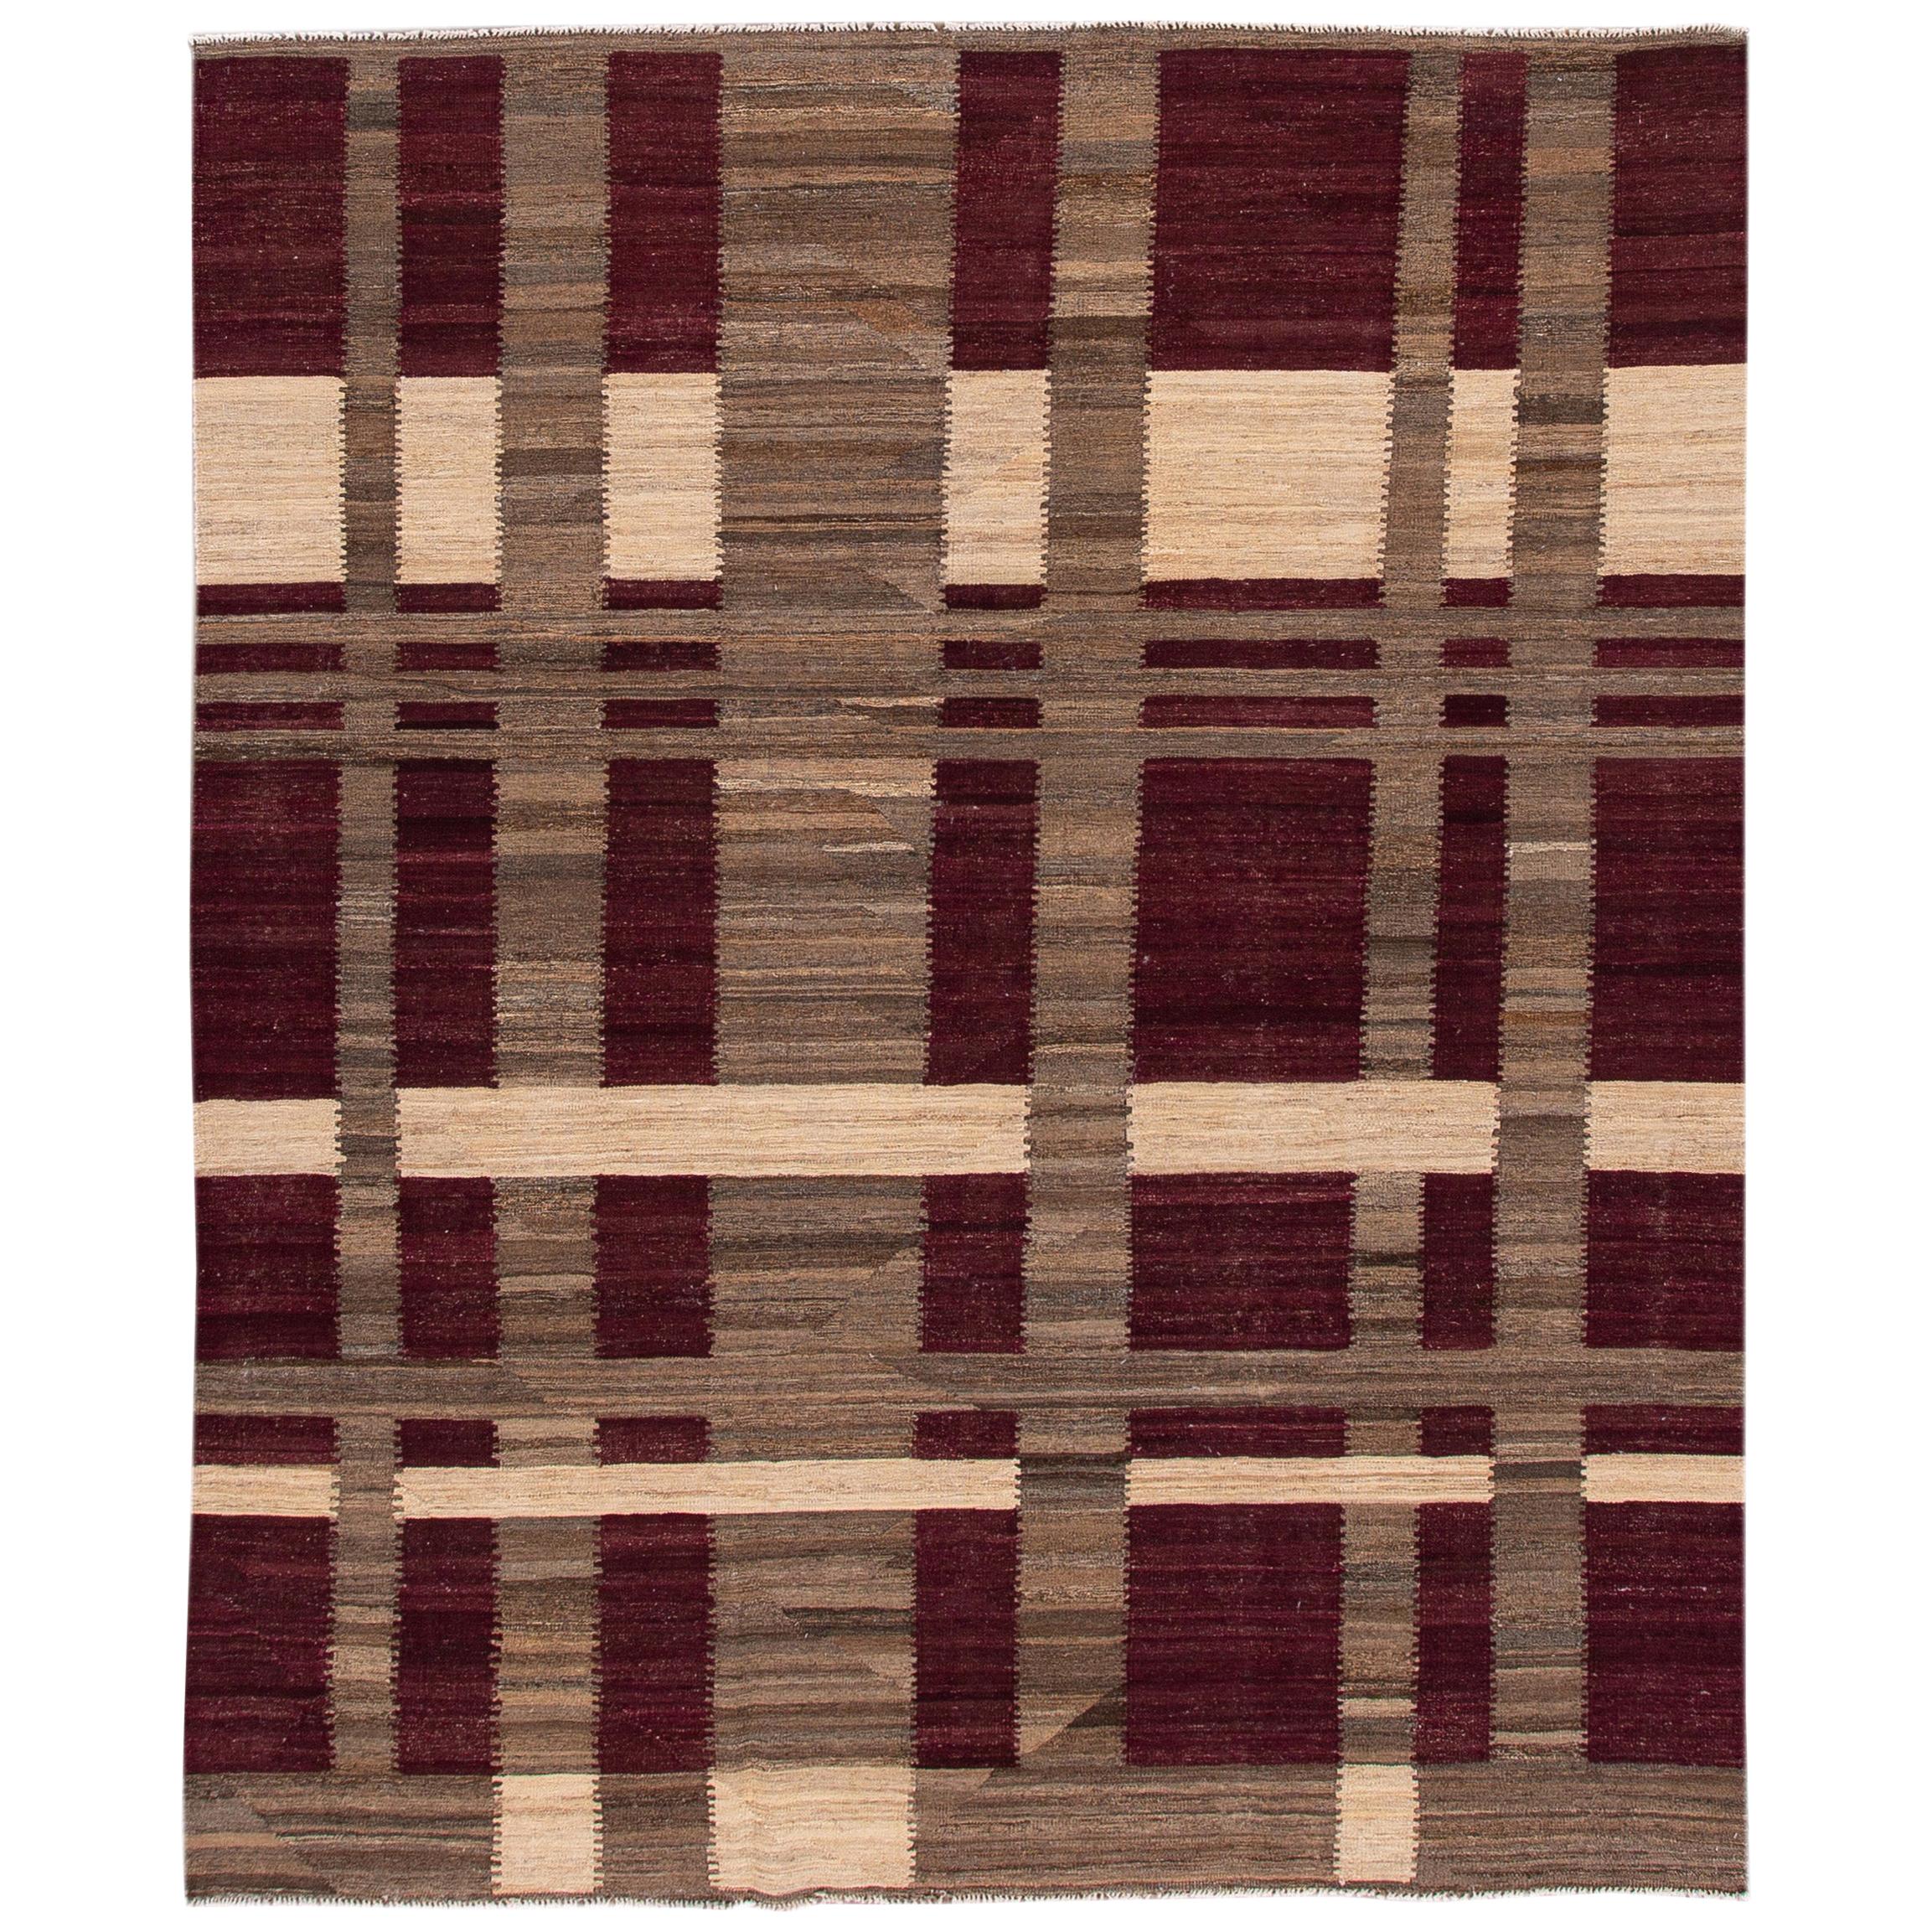 Modern Kilim Flatweave Burgundy and Brown Geometric Wool Rug